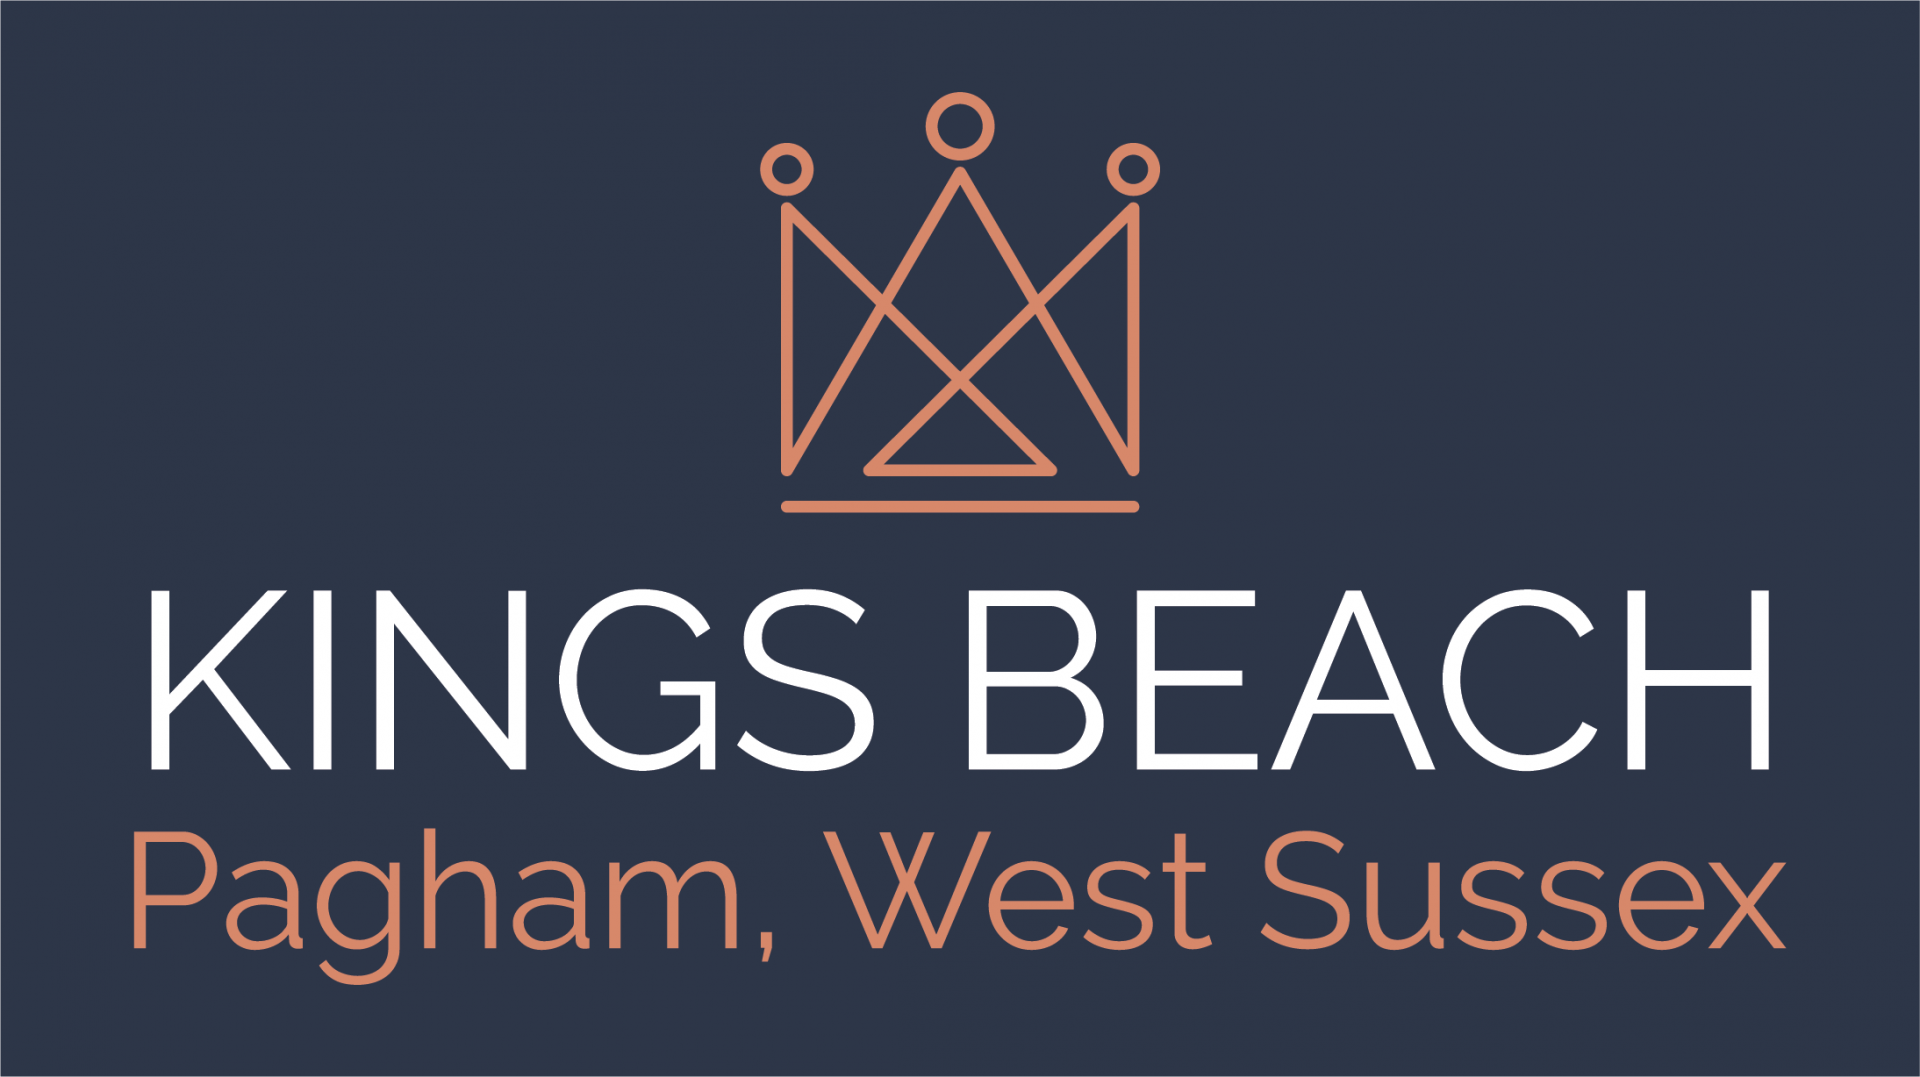 Kings Beach - Pagham - Bognor Regis - West Sussex